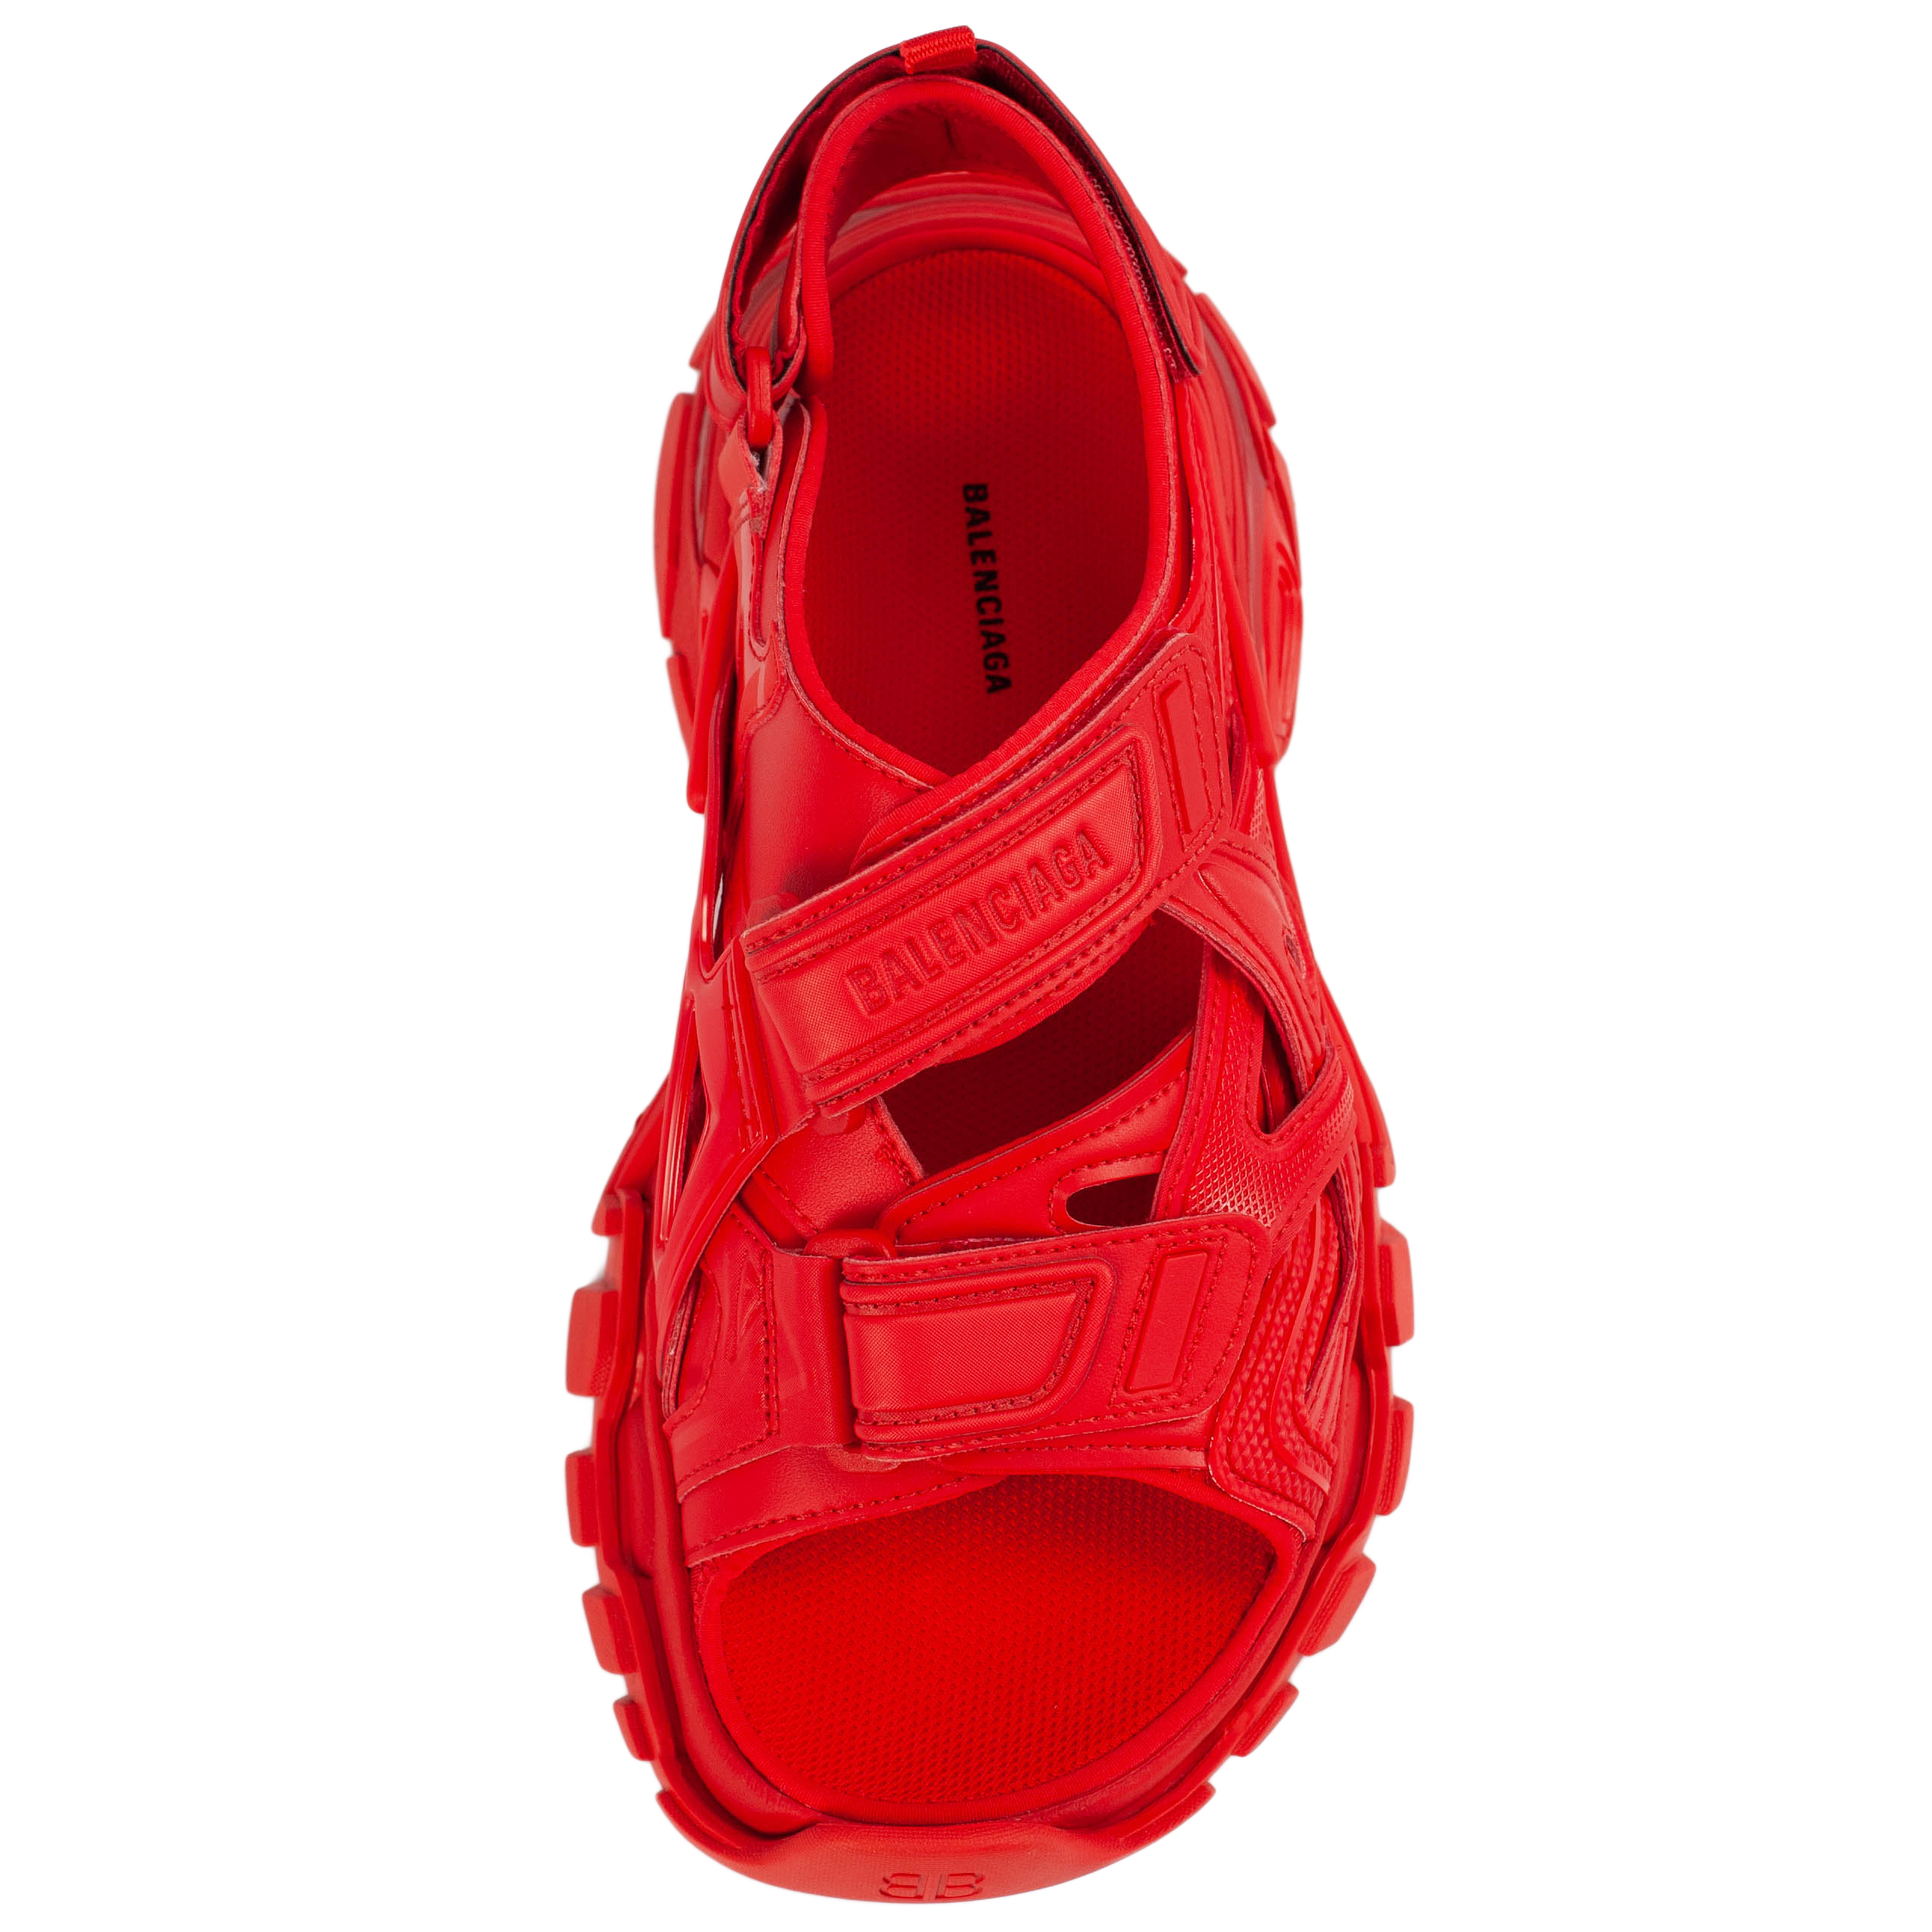 Красные сандалии Track Balenciaga 617543/W2CC1/6000, размер 40;39;38;37 617543/W2CC1/6000 - фото 2